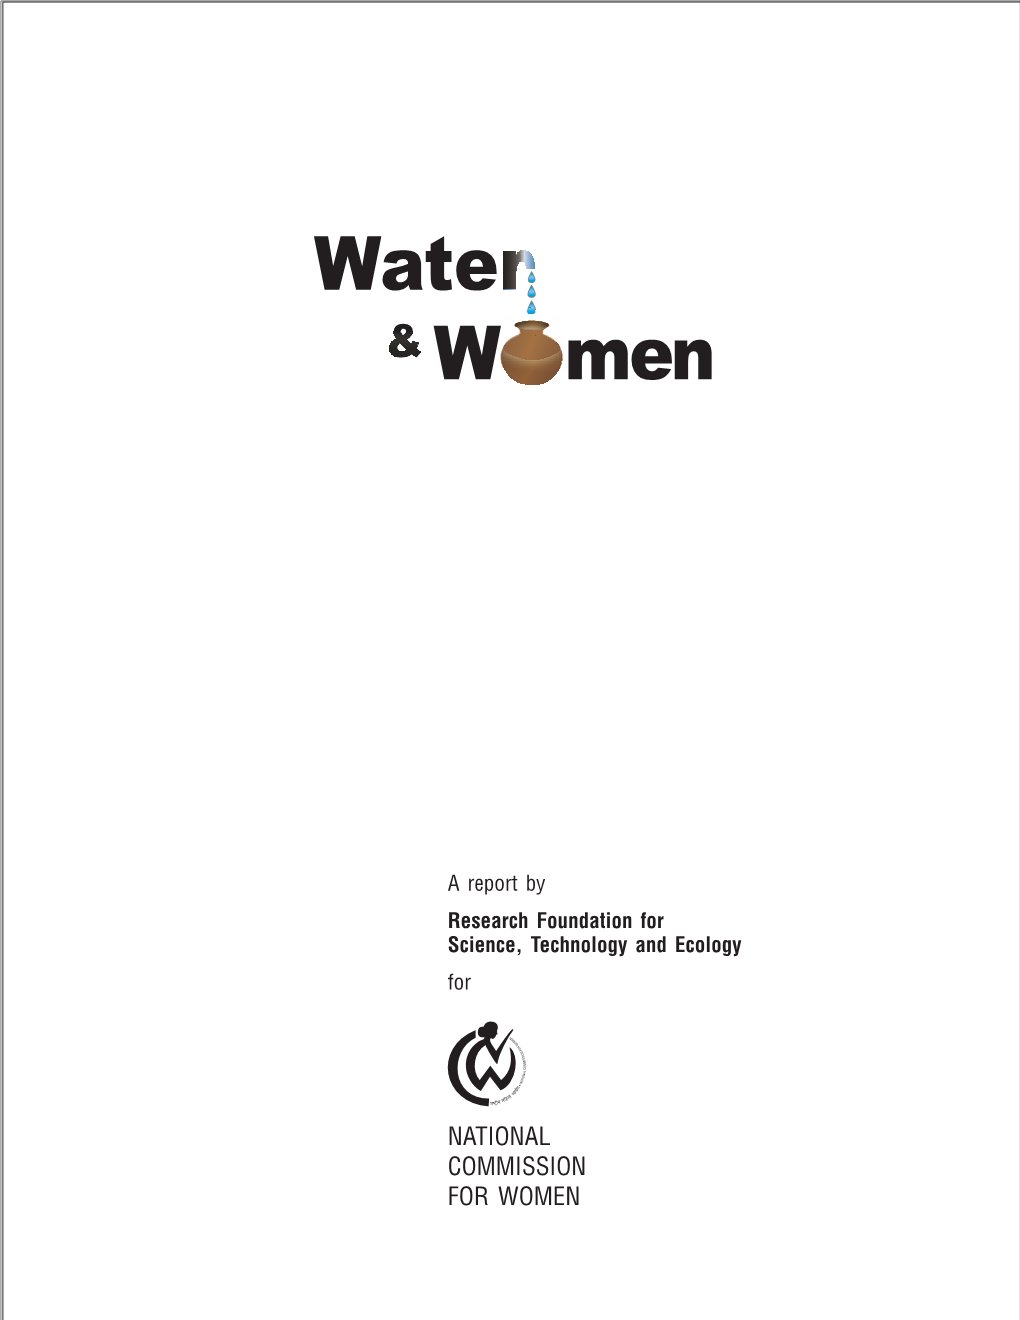 Water in Women's Hand